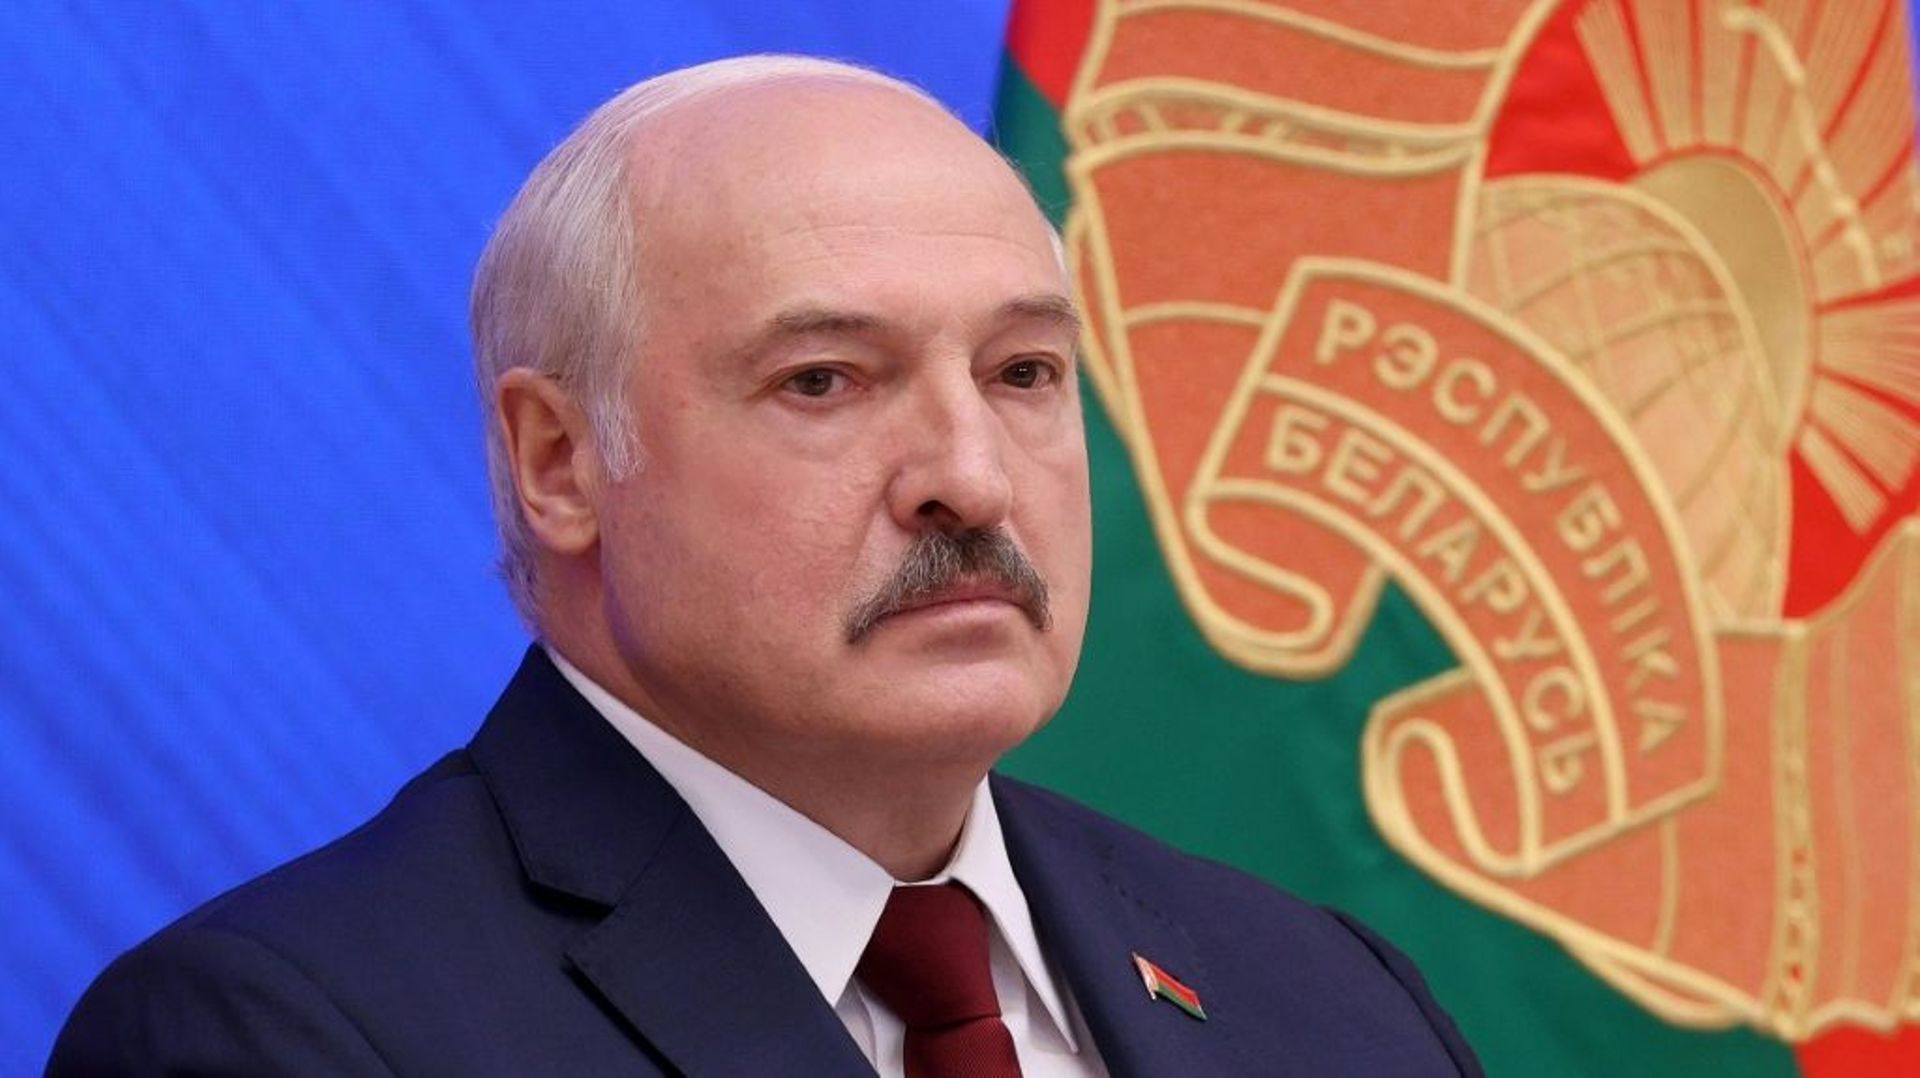 Le président Alexandre Loukachenko, le 9 août 2021 à Minsk, au Bélarus